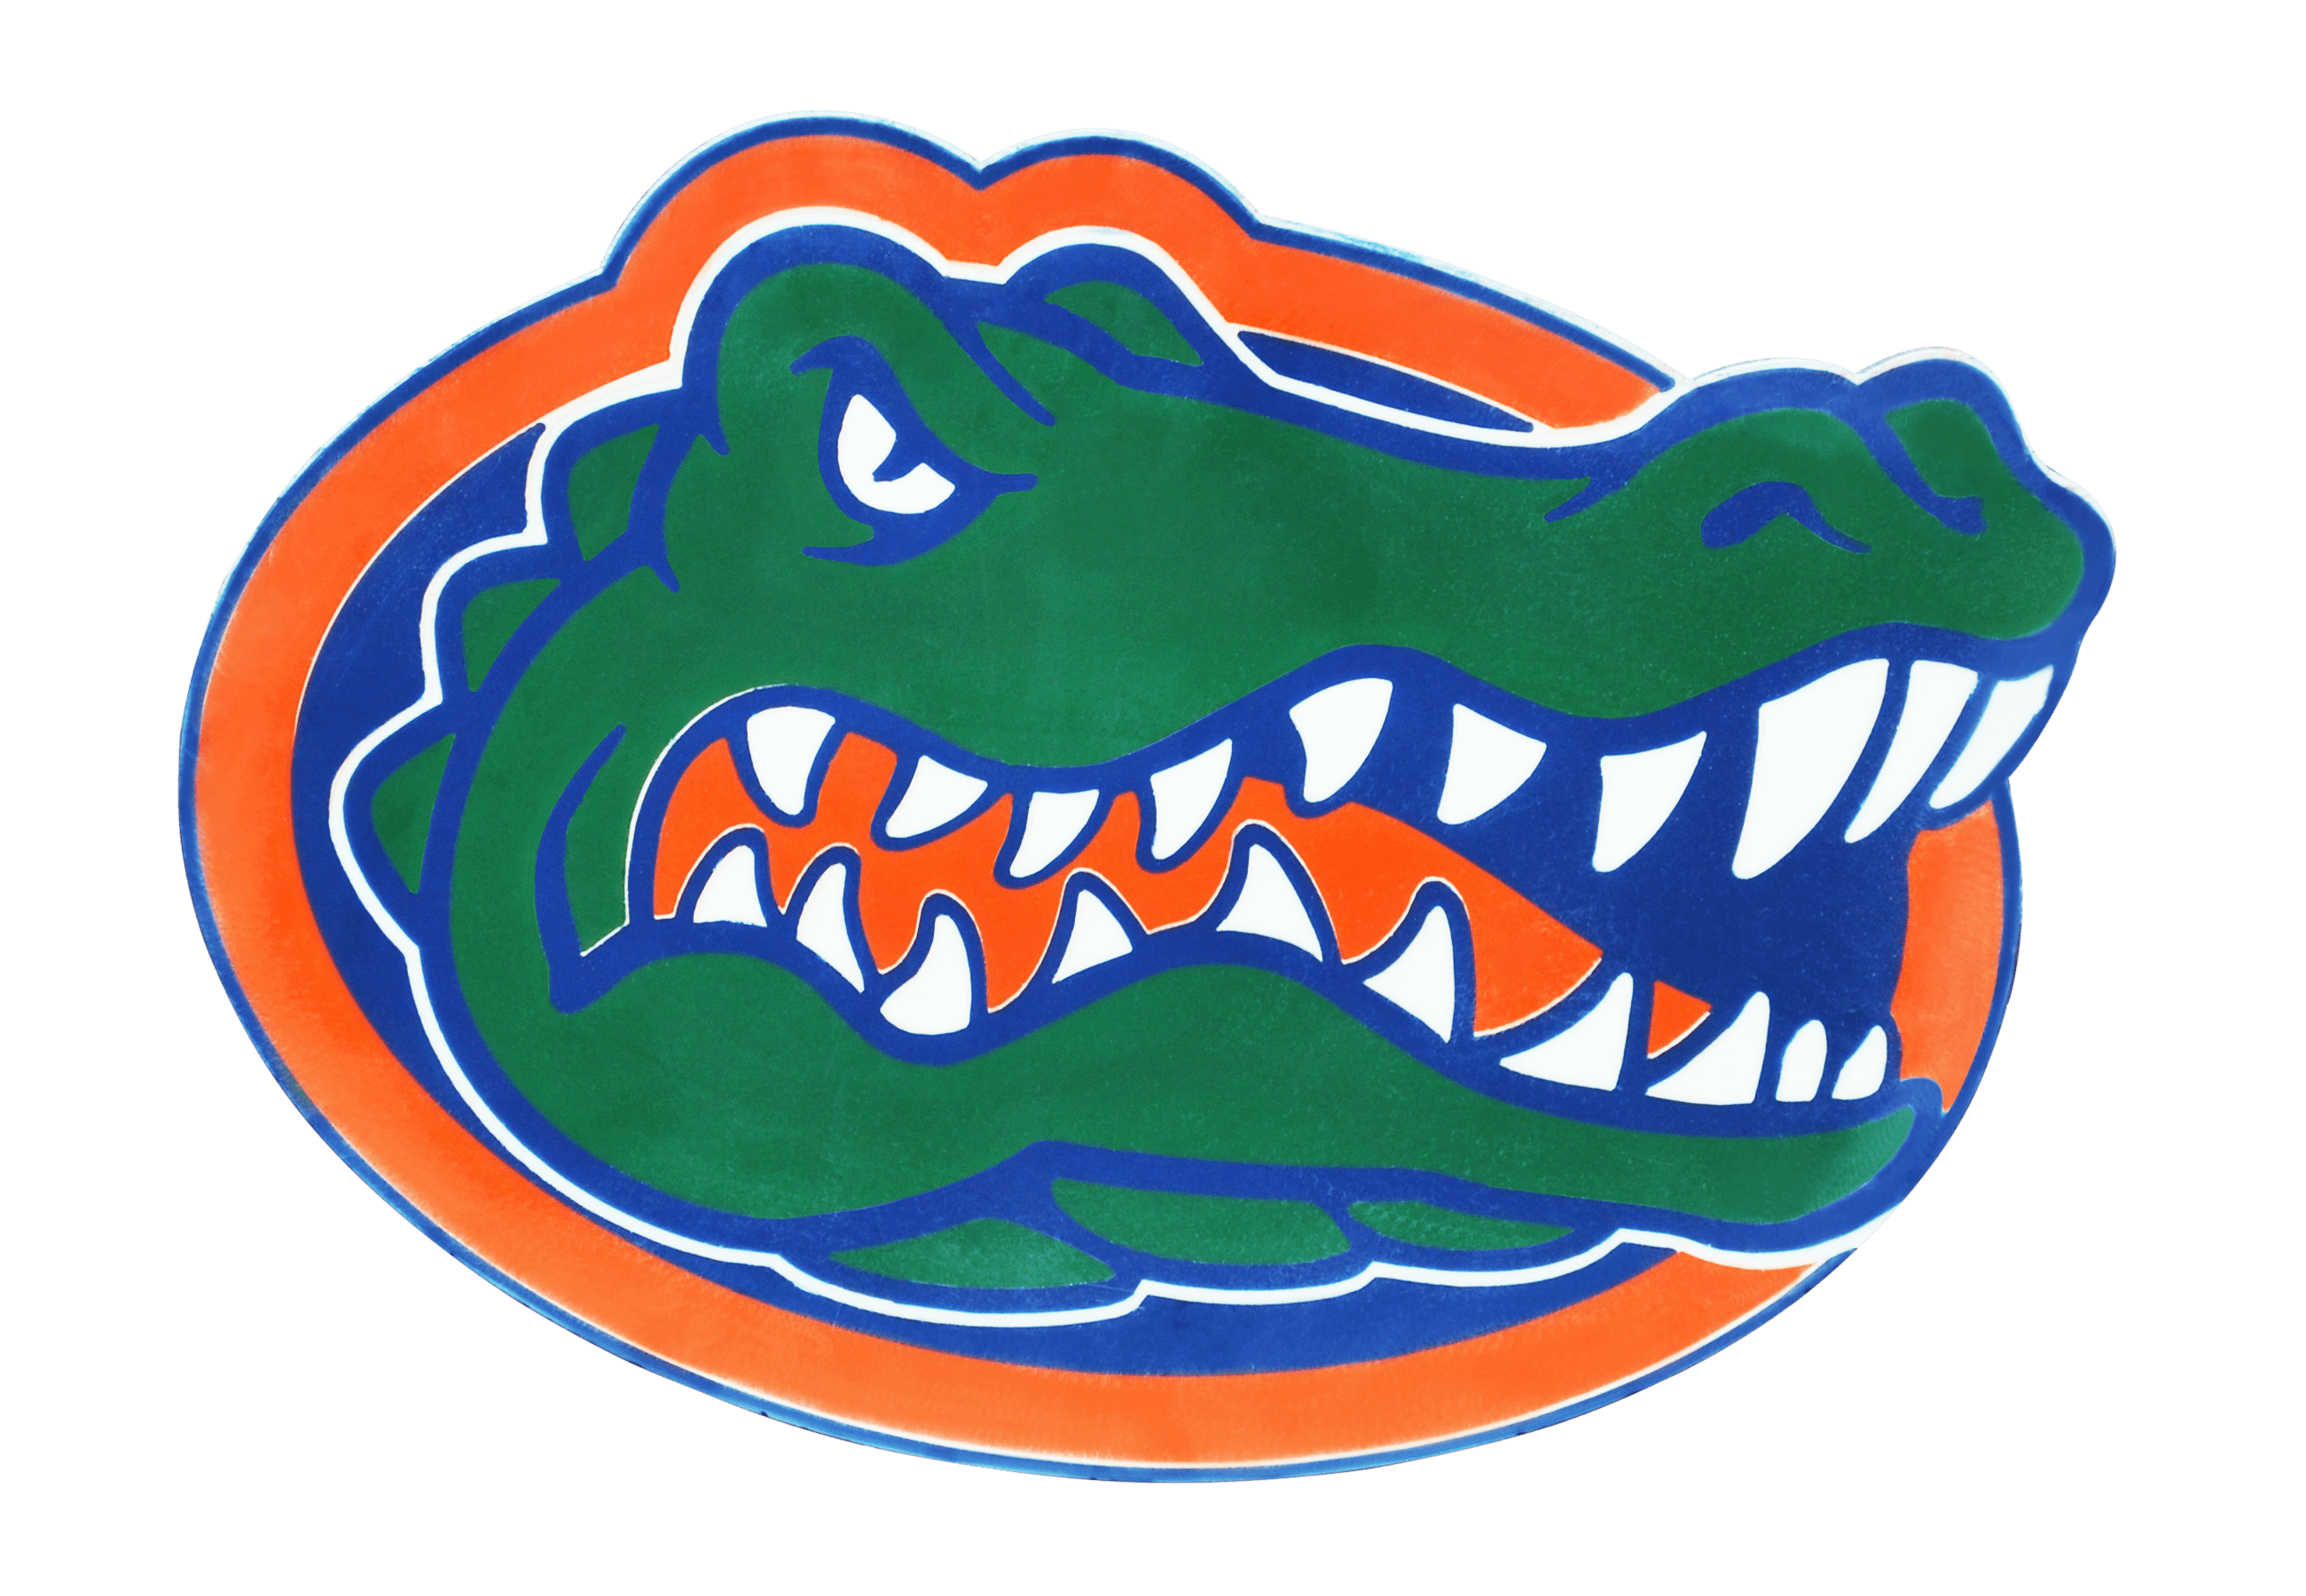 University of Florida Logo - Florida Gators Logo, Florida Gators Symbol, Meaning, History and ...